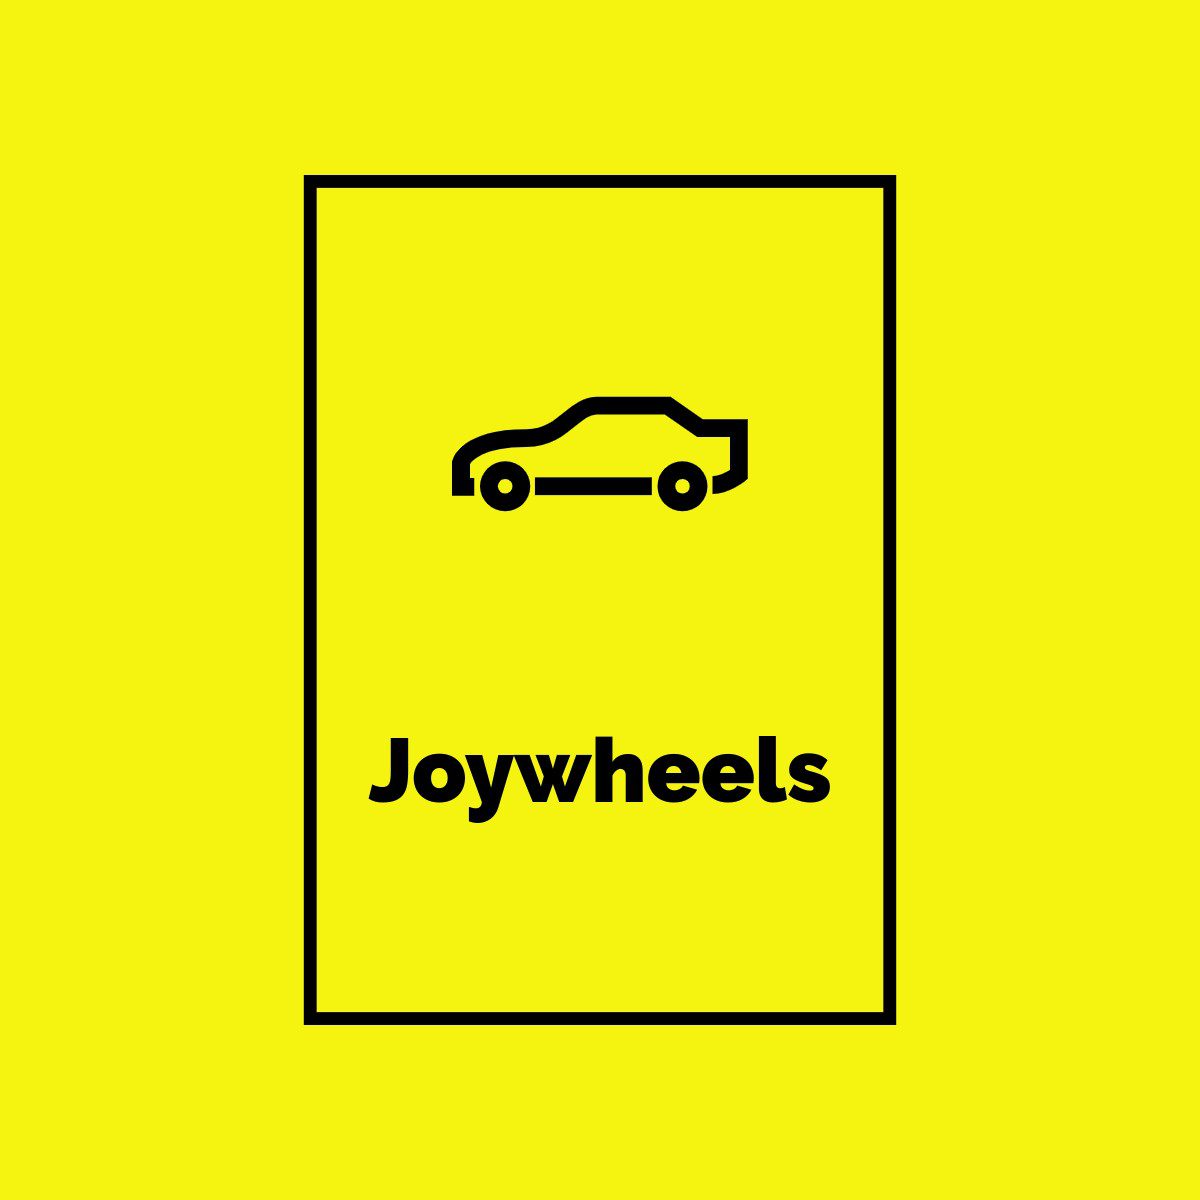 Joywheels